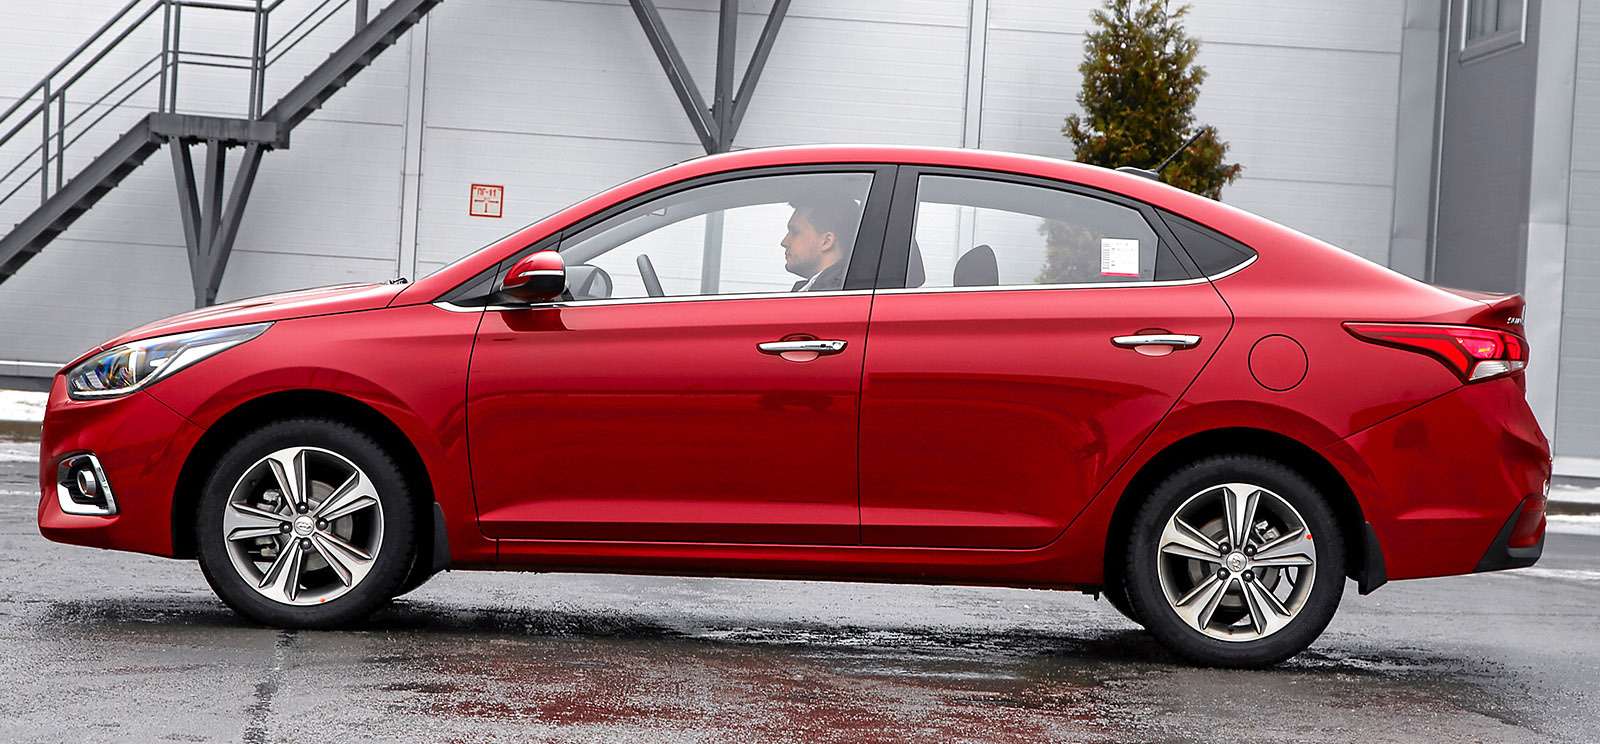 В новом поколении длина кузова Hyundai Solaris перемахнула за отметку 4,4 м.